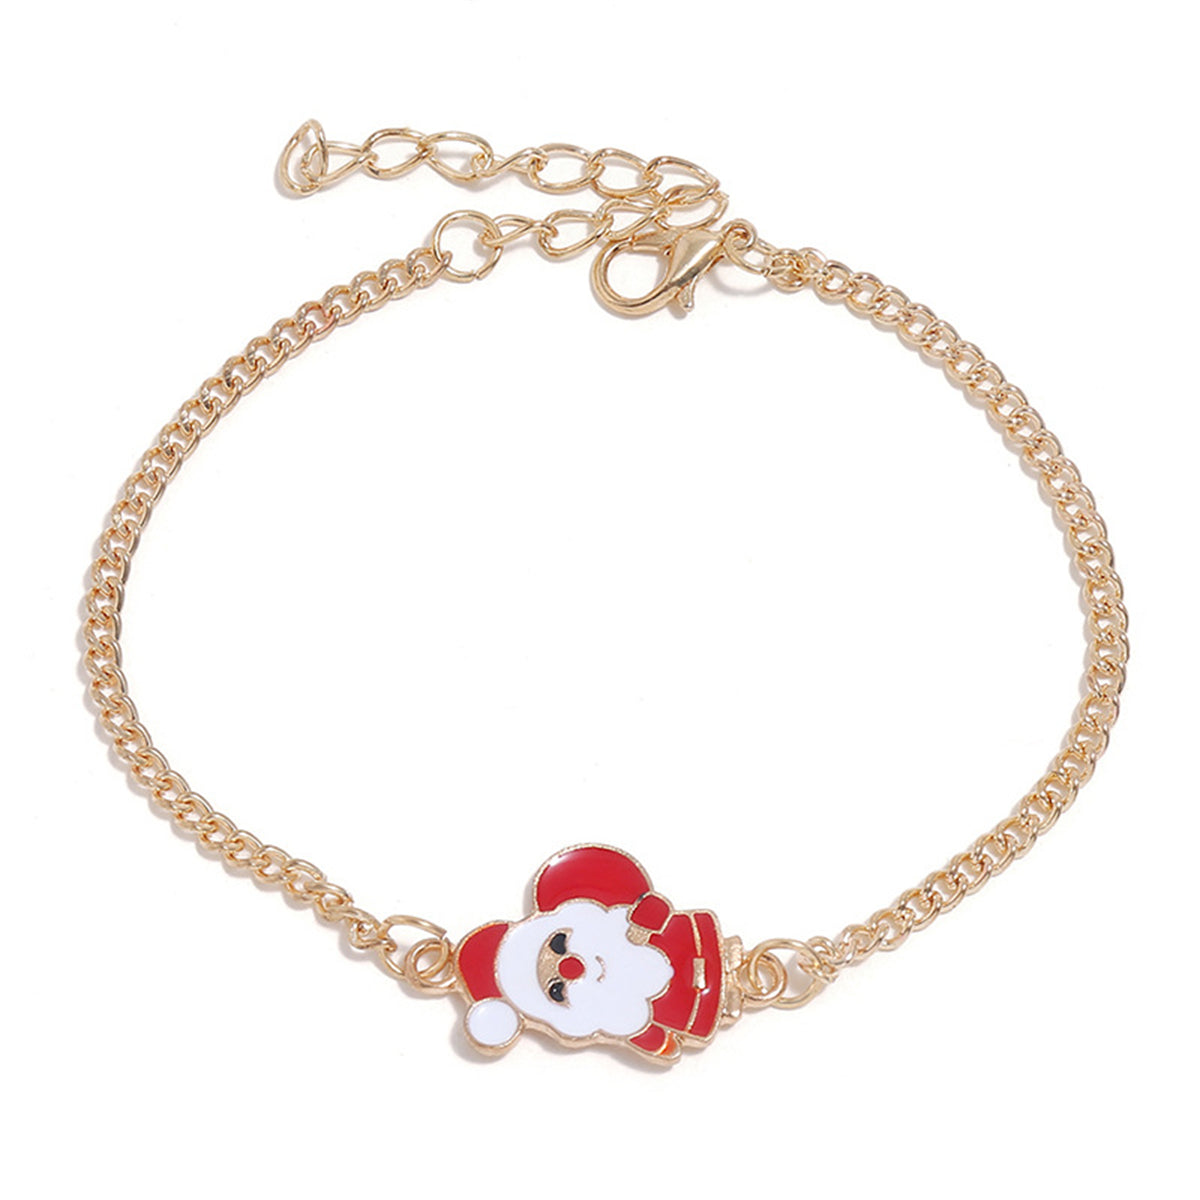 Red Enamel & 18K Gold-Plated Santa Pendant Necklace Set